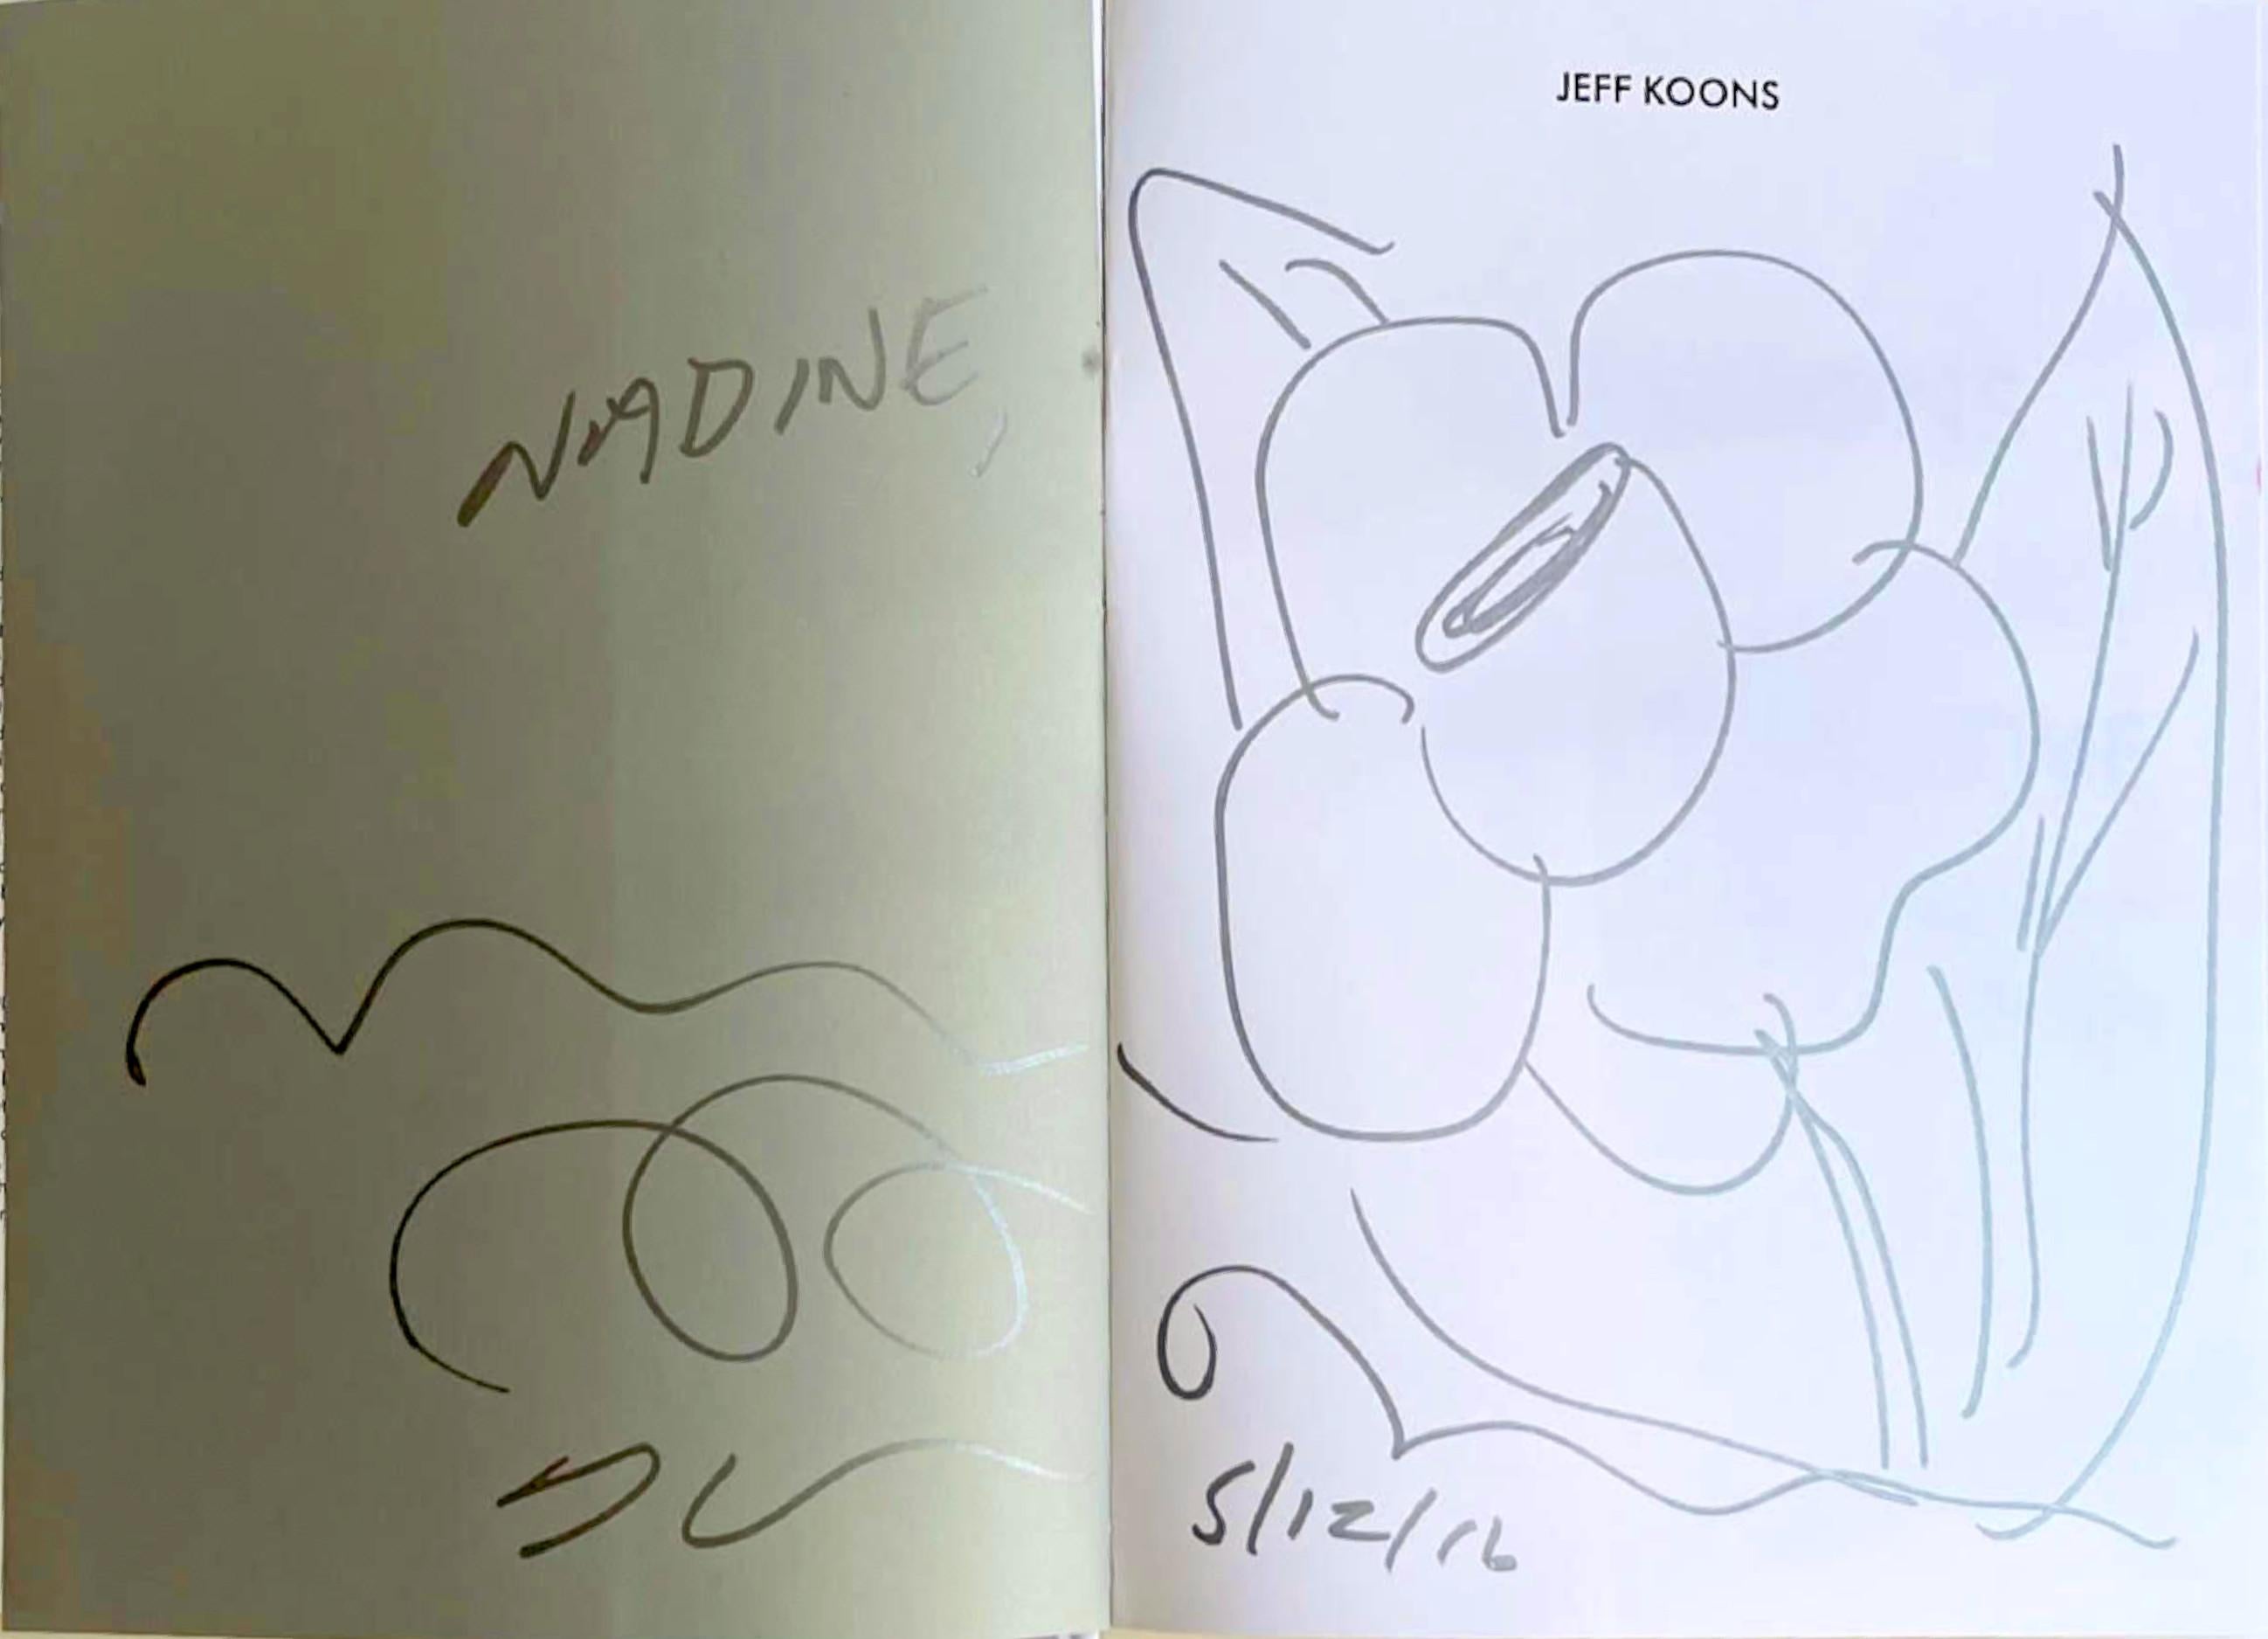 Dessin floral original signé deux fois relié dans la monographie du Whitney Museum - Pop Art Art par Jeff Koons